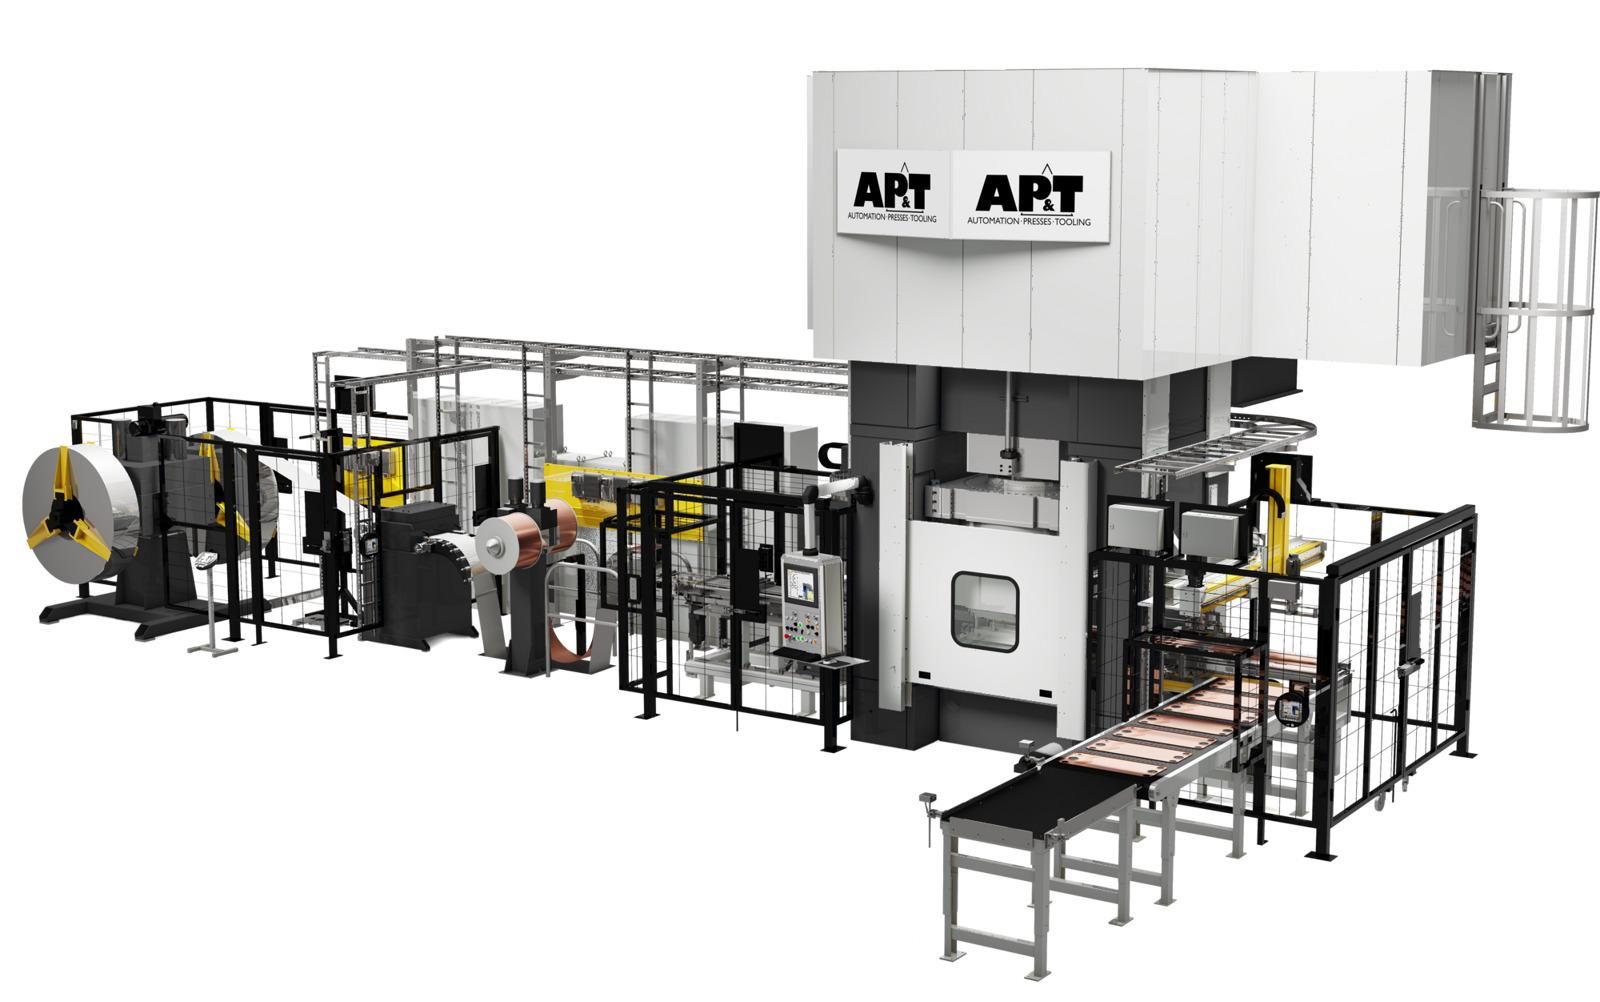 低能耗使AP&T伺服液压机在经济和环境上独具优势，对板式换热器片制造商极富吸引力